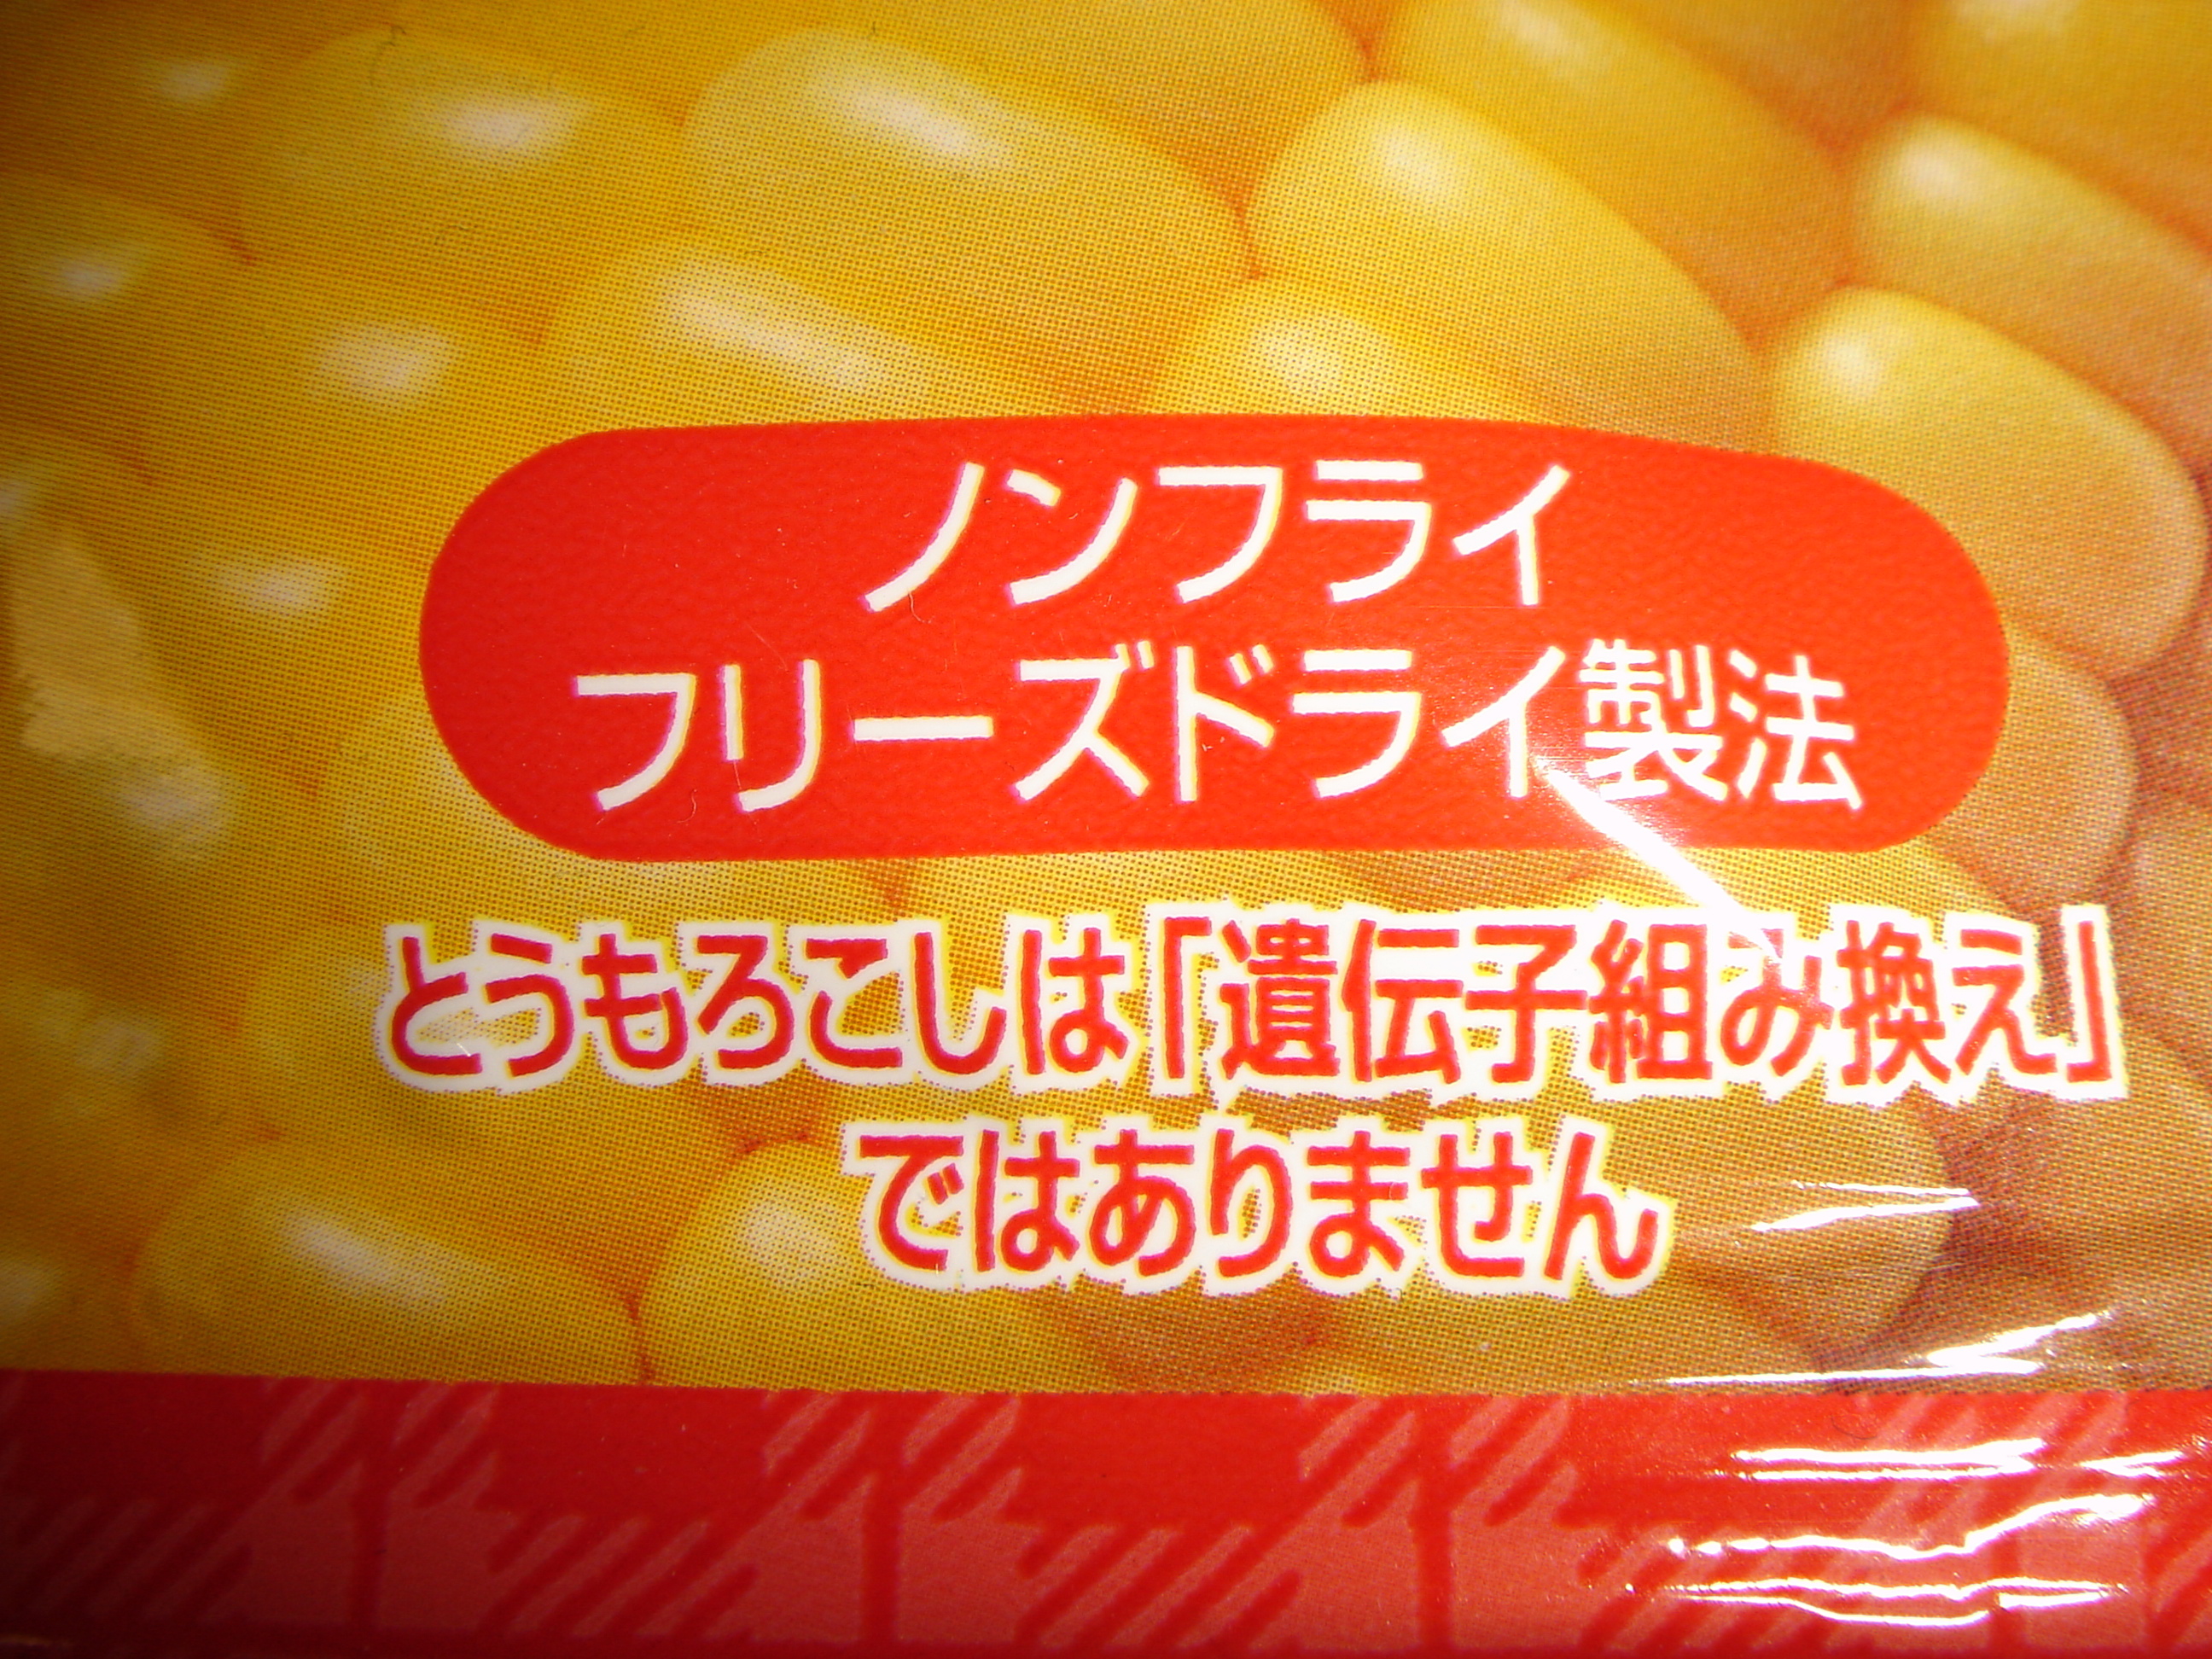 Non-GMO Label: Corn Snack Package